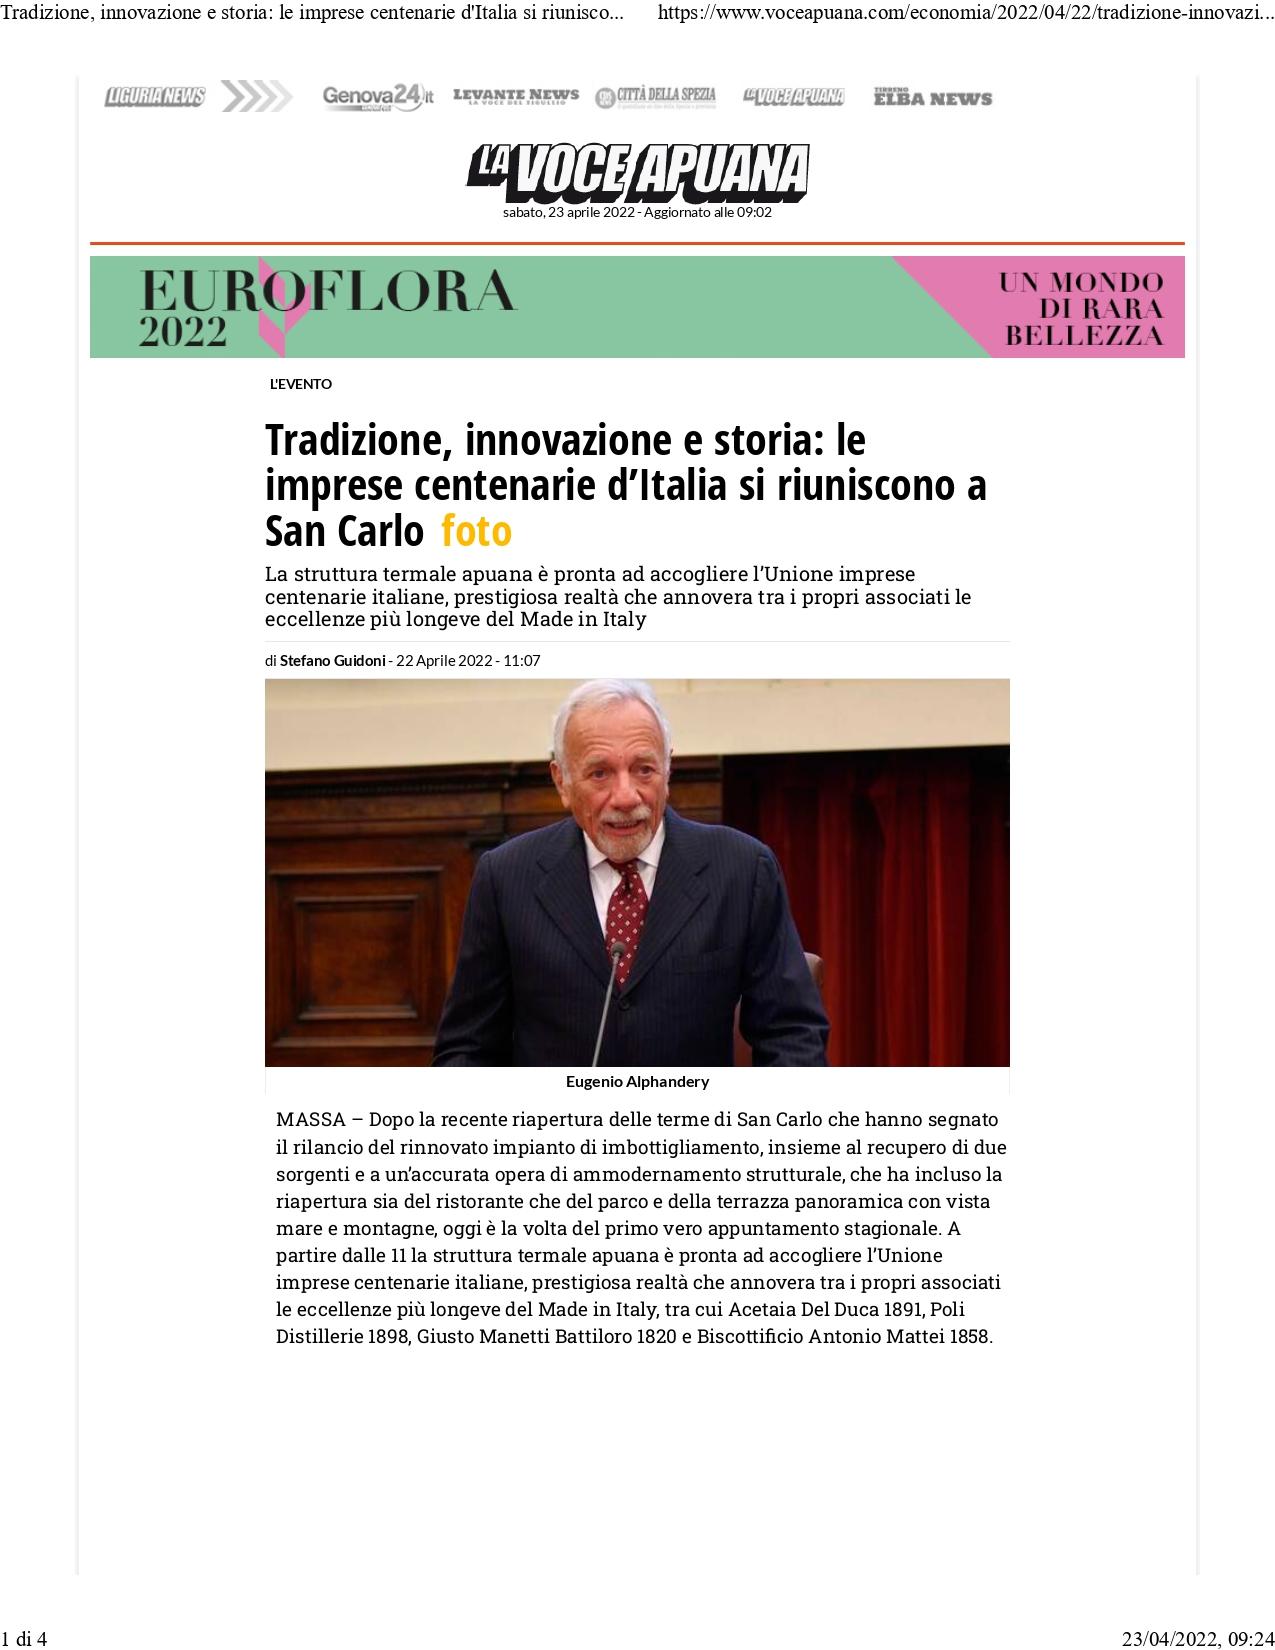 Tradizione innovazione e storia La voce Apuana 22 aprile 2022 page 0001